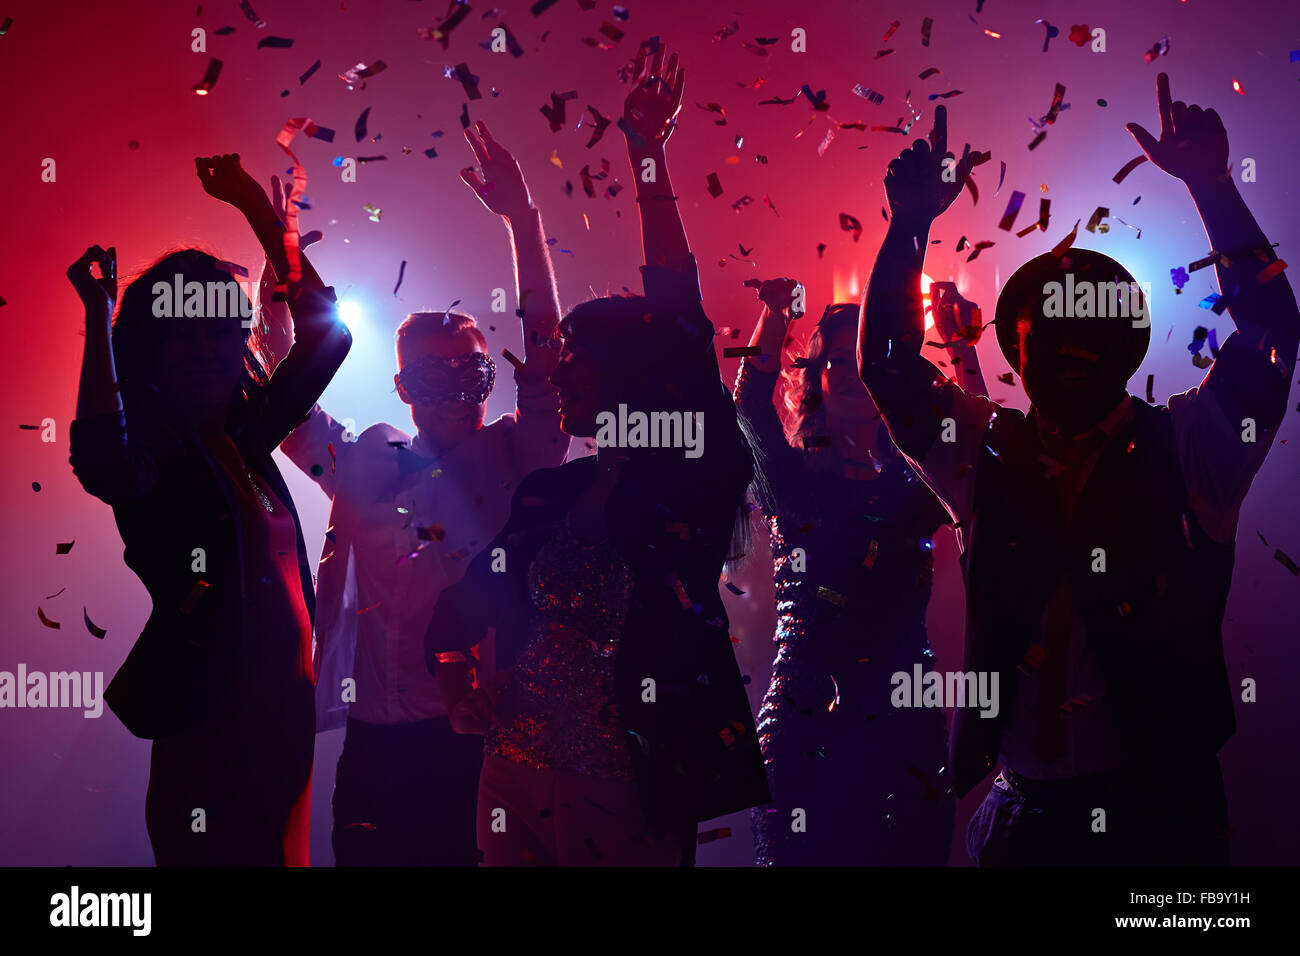 Party people having fun in nightclub Stock Photo